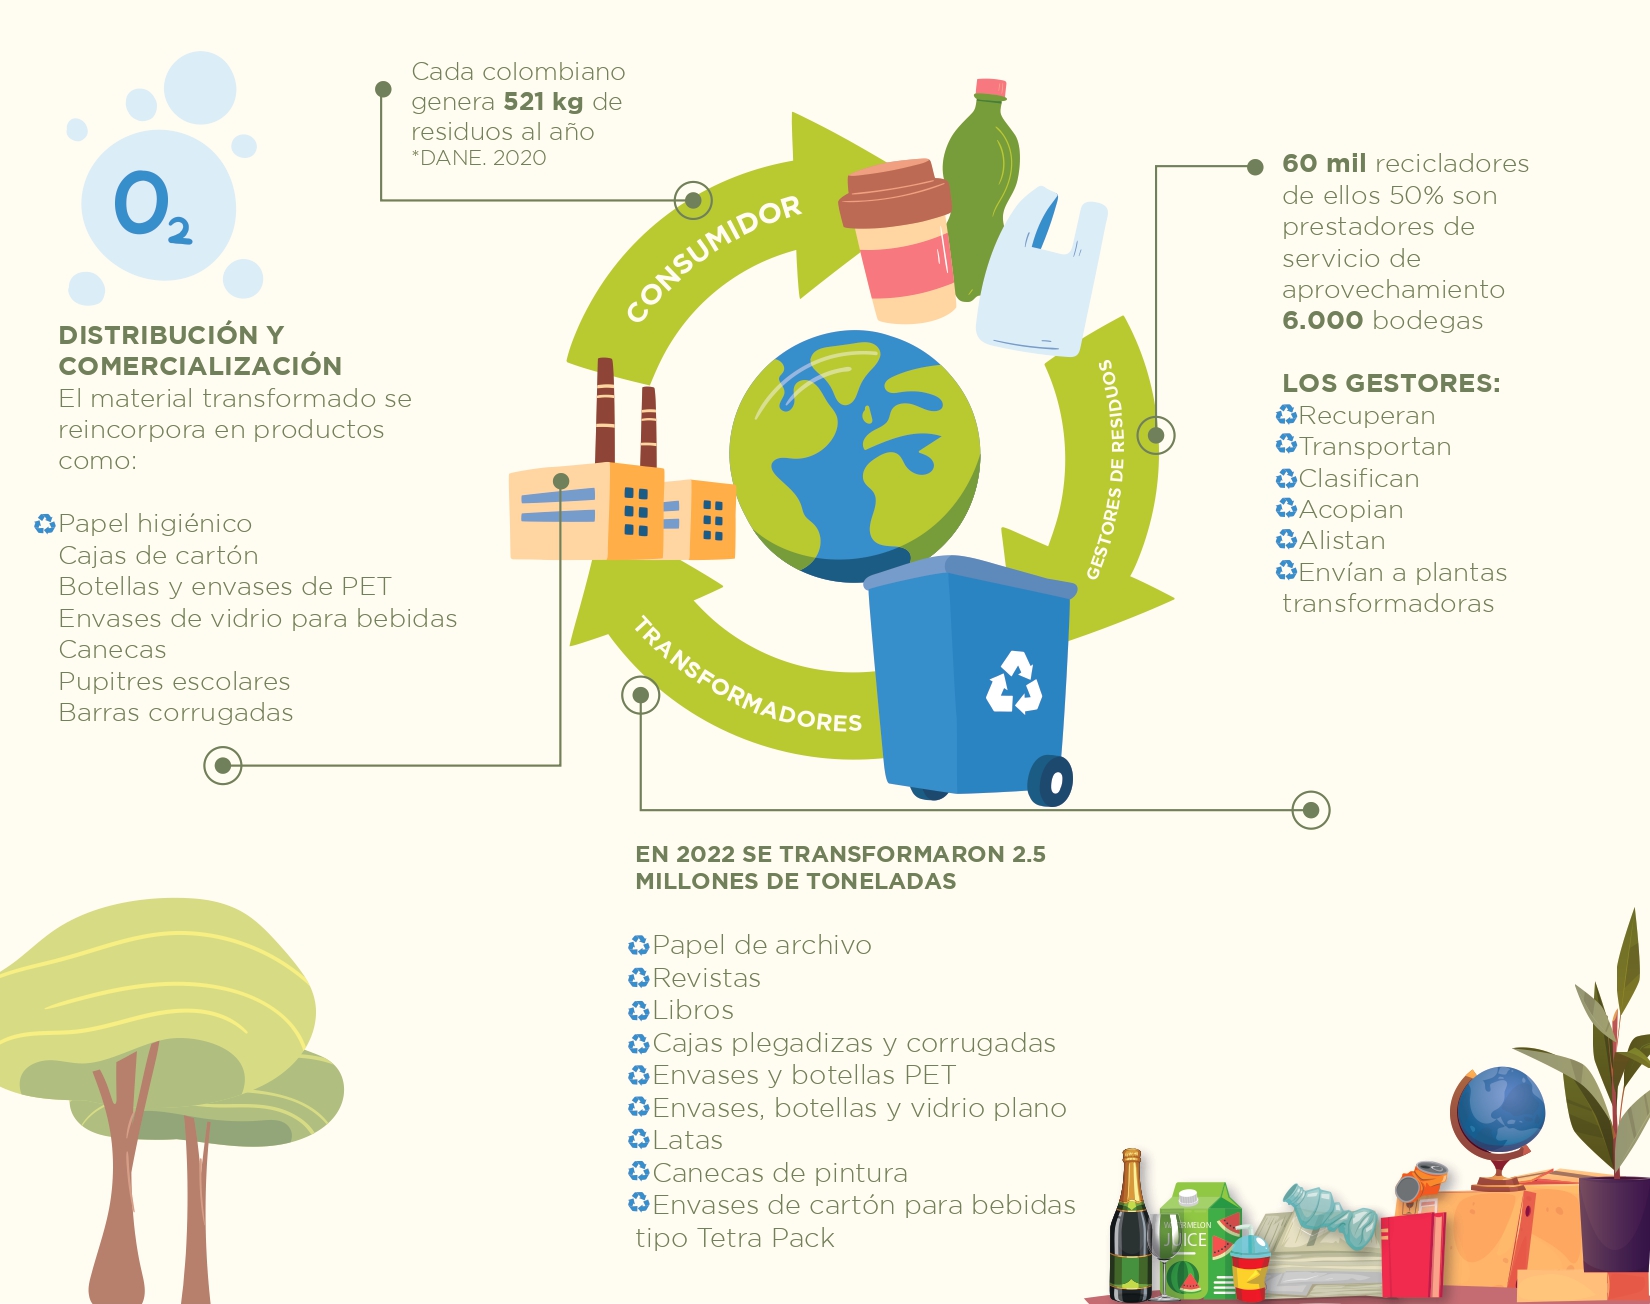 Durante 2022 se transformaron en Colombia más de 2.5 millones de toneladas de residuos